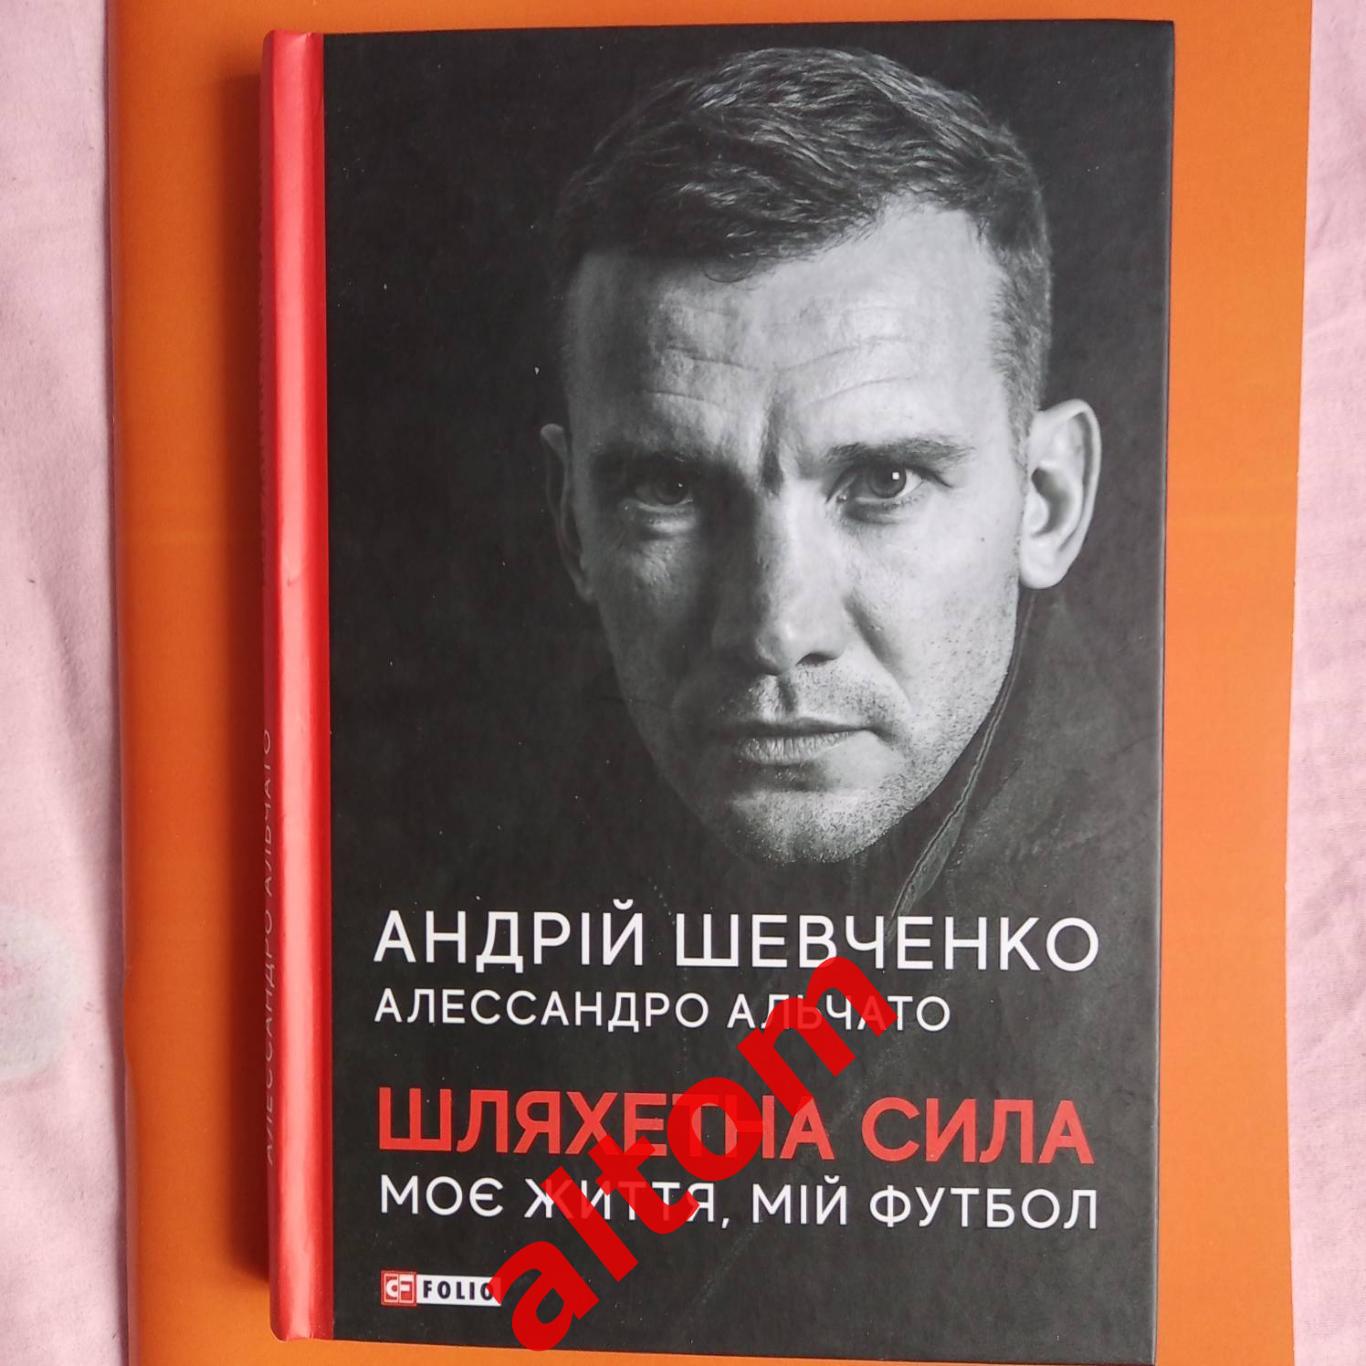 Андрей Шевченко Моя жизнь, мой футбол. 2021 год. 252 страницы.